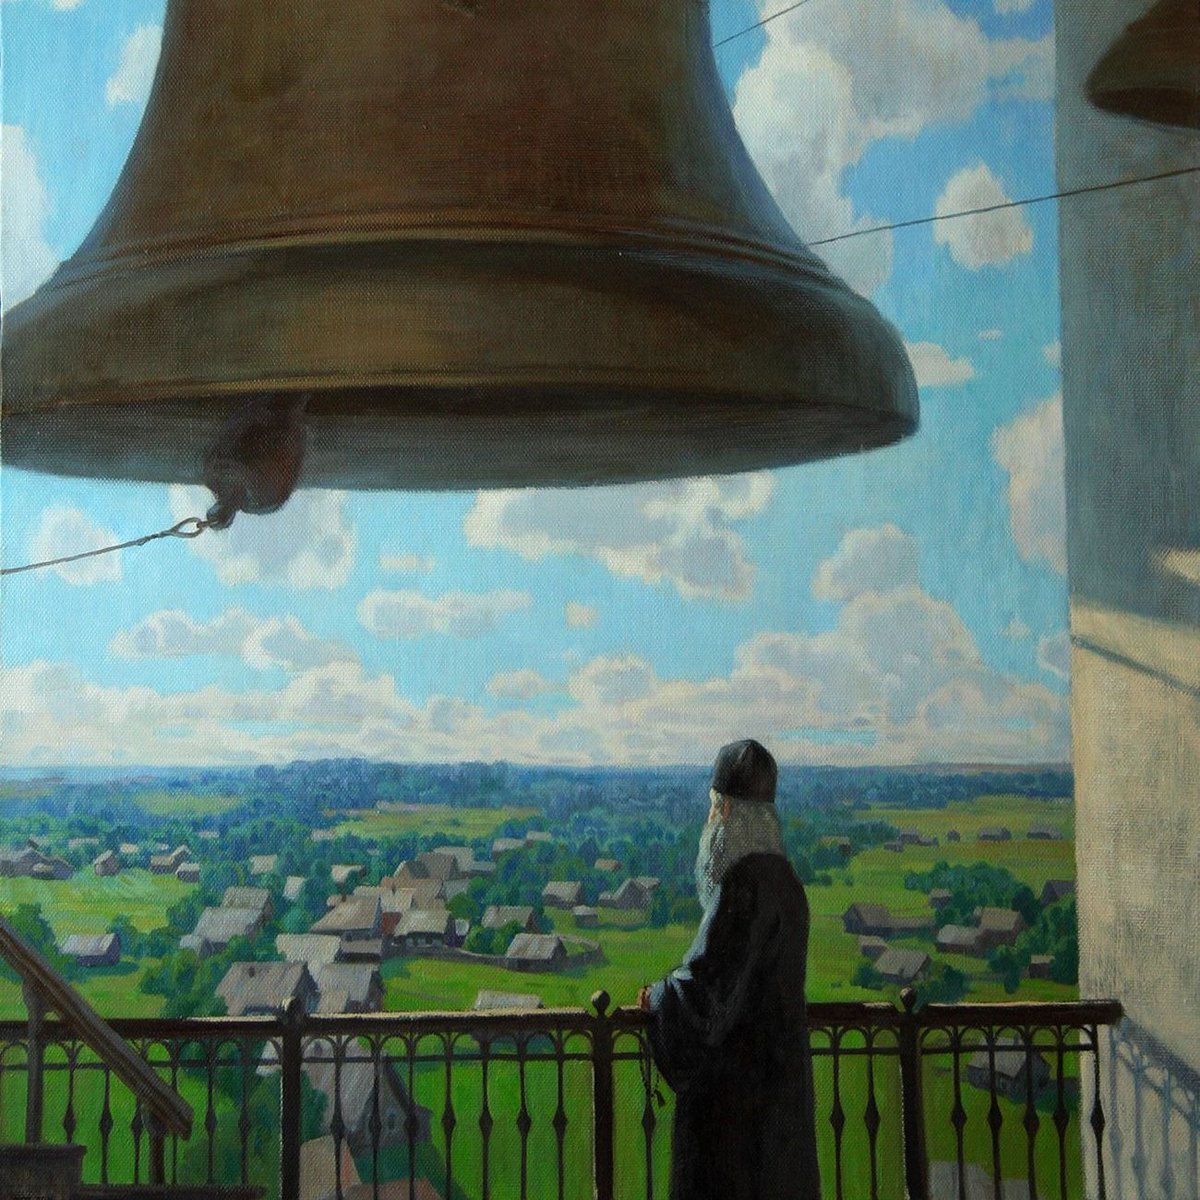 Колокольный звон монастырей. Картина колокола Якунчикова. Колокольный звон колокол Благовест.